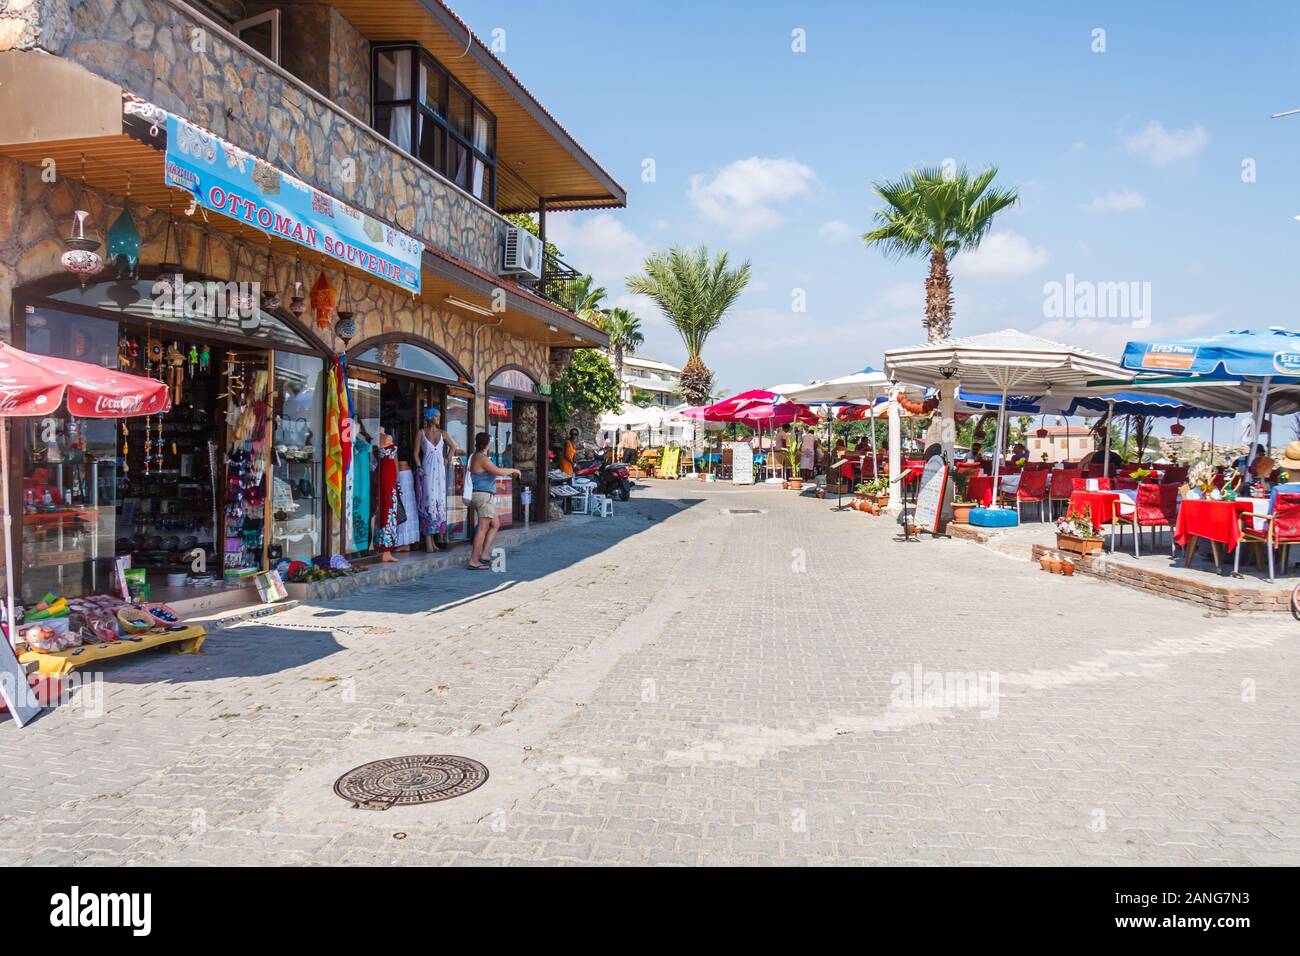 Side, Türkei - 9. September 2011: Geschäfte und Restaurants direkt am Strand. Die Stadt ist ein populat Reiseziel. Stockfoto